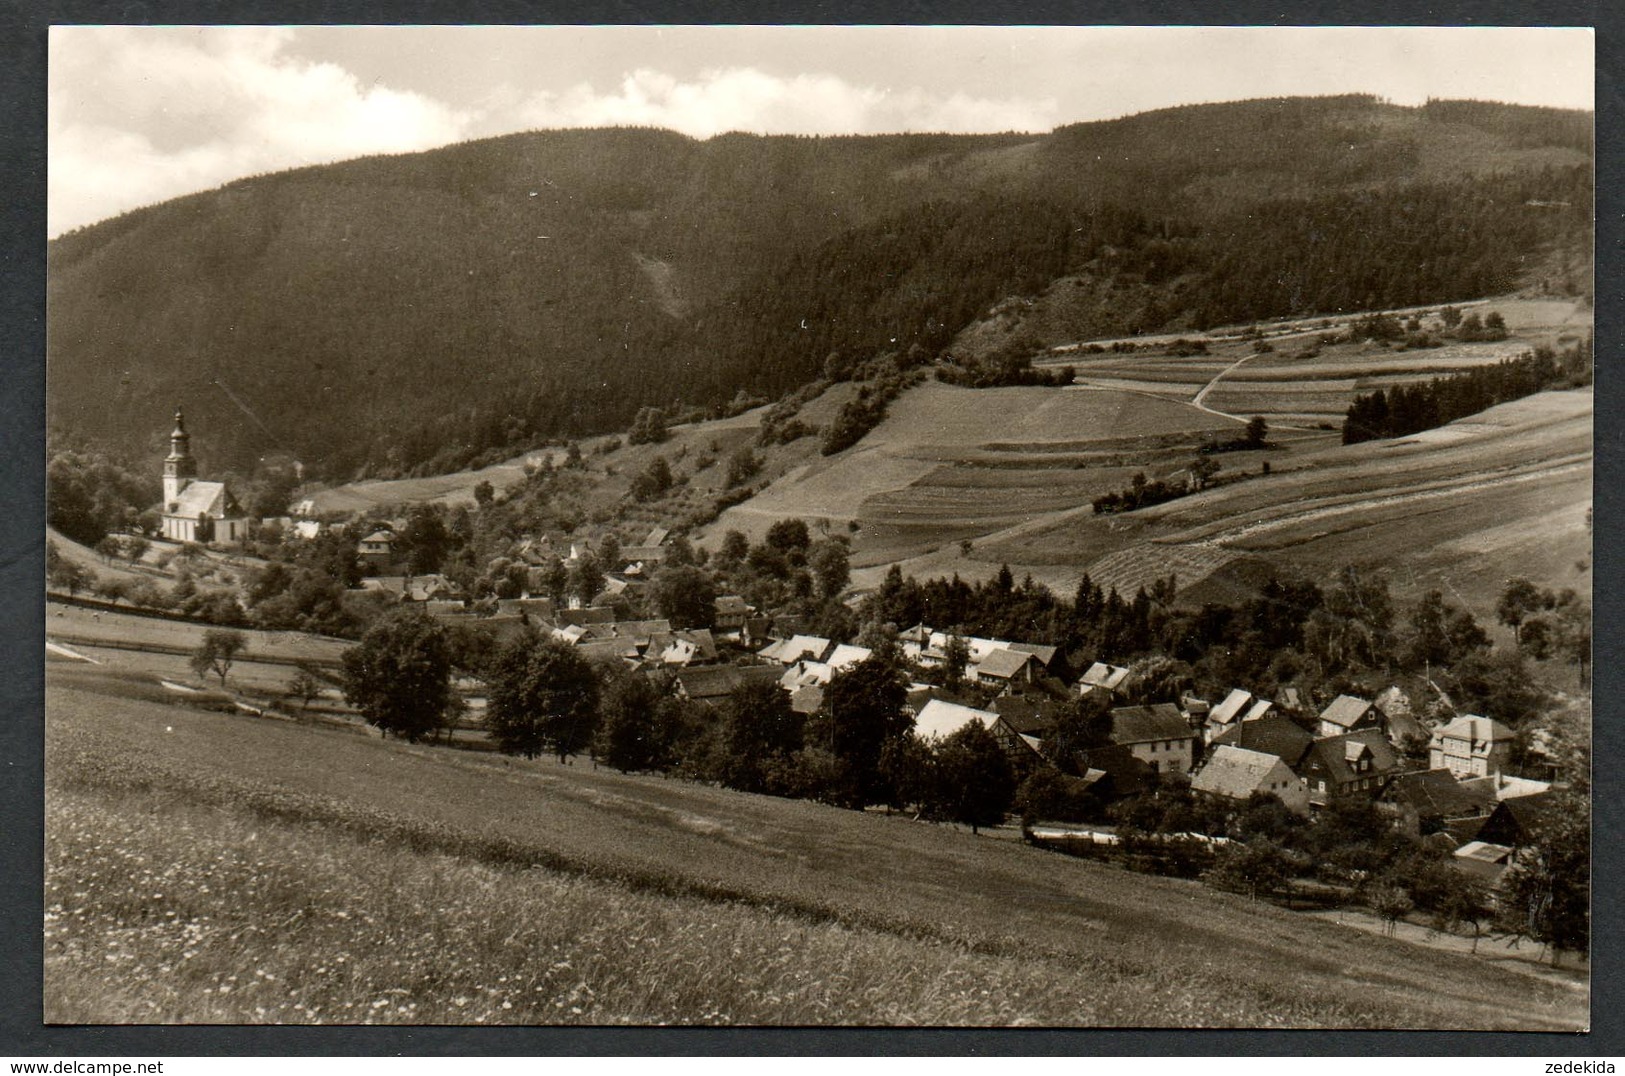 A1699 - Alte Foto Ansichtskarte - Döschnitz Kr. Rudolstadt - N. Gel TOP - Schlegel - Rudolstadt